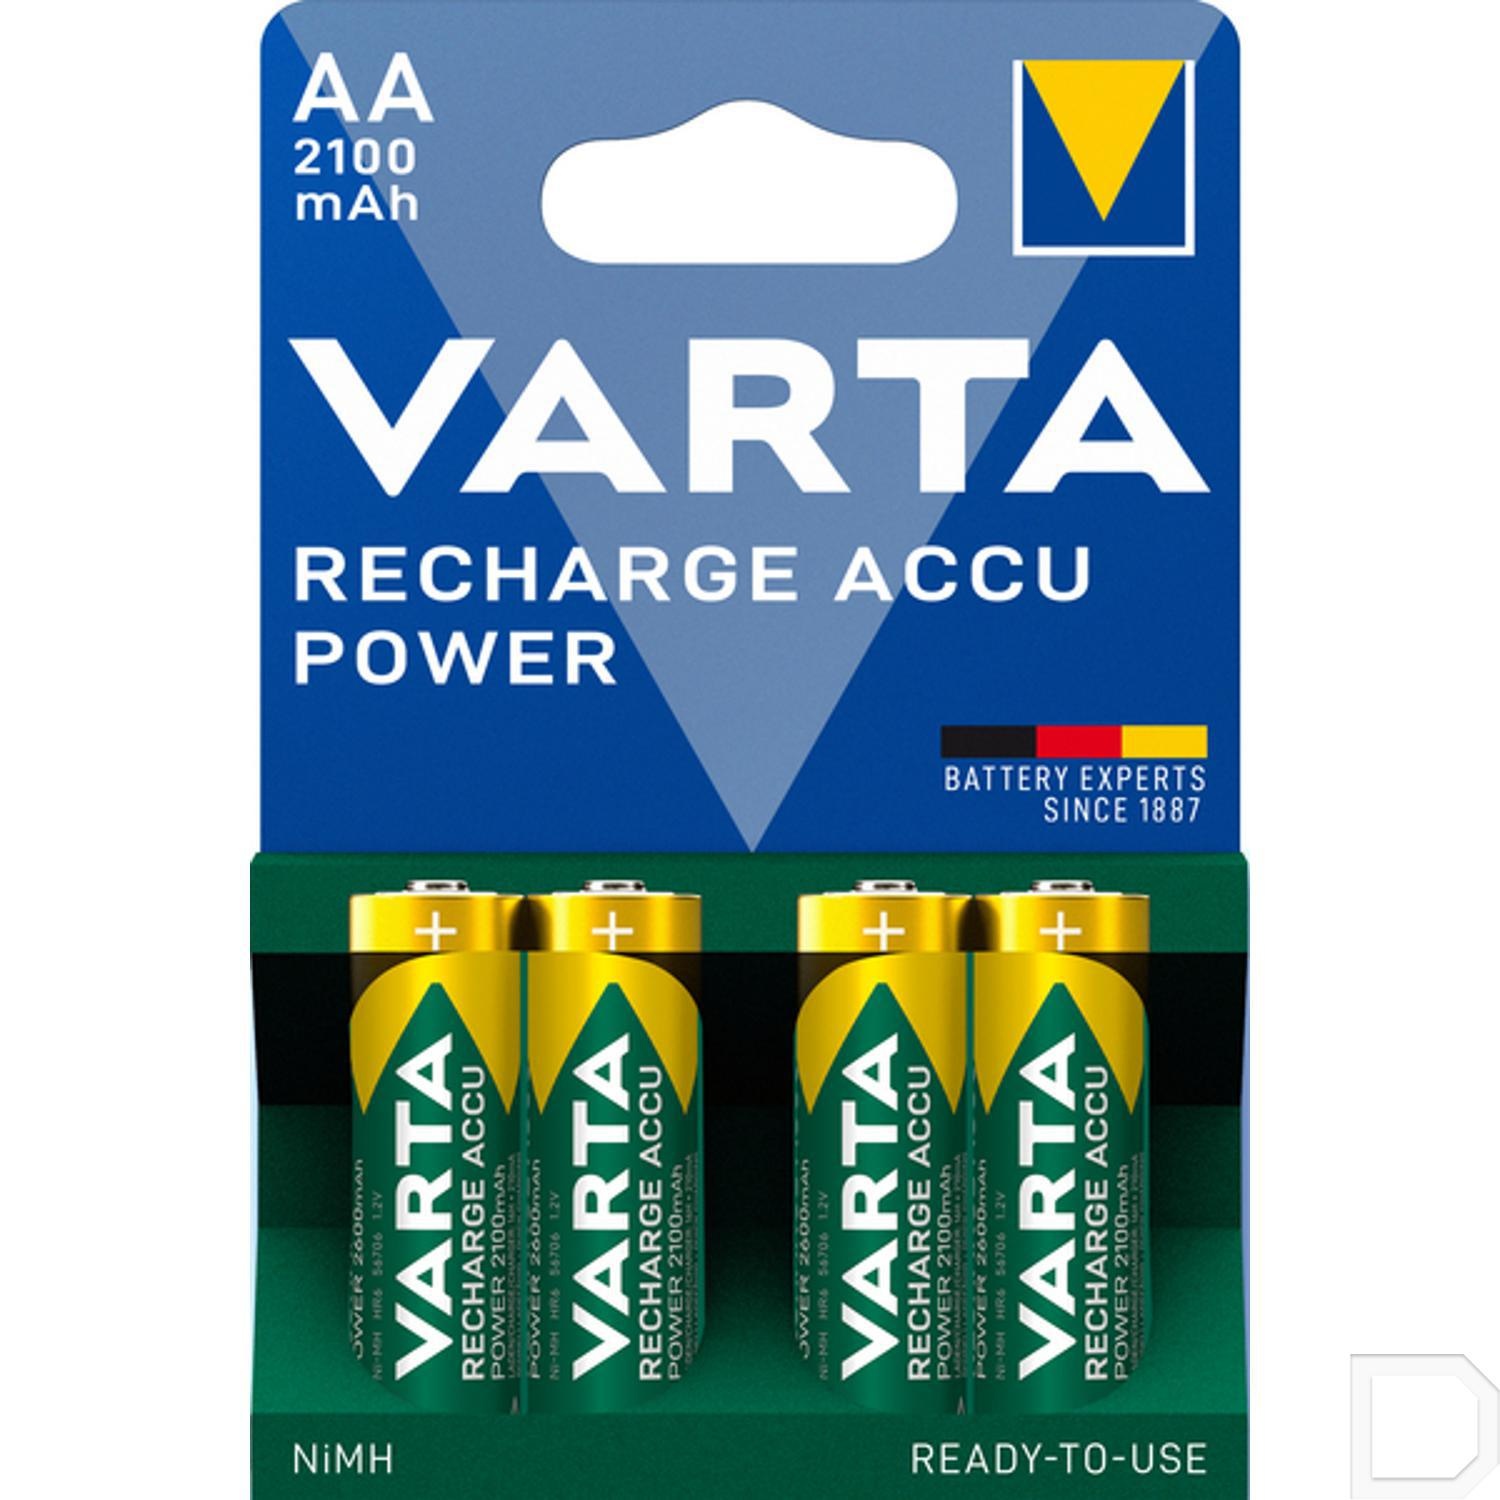 voelen Pas op insect Varta AA oplaadbare batterijen 2 stuks - 2100mAh - Beterbatterij